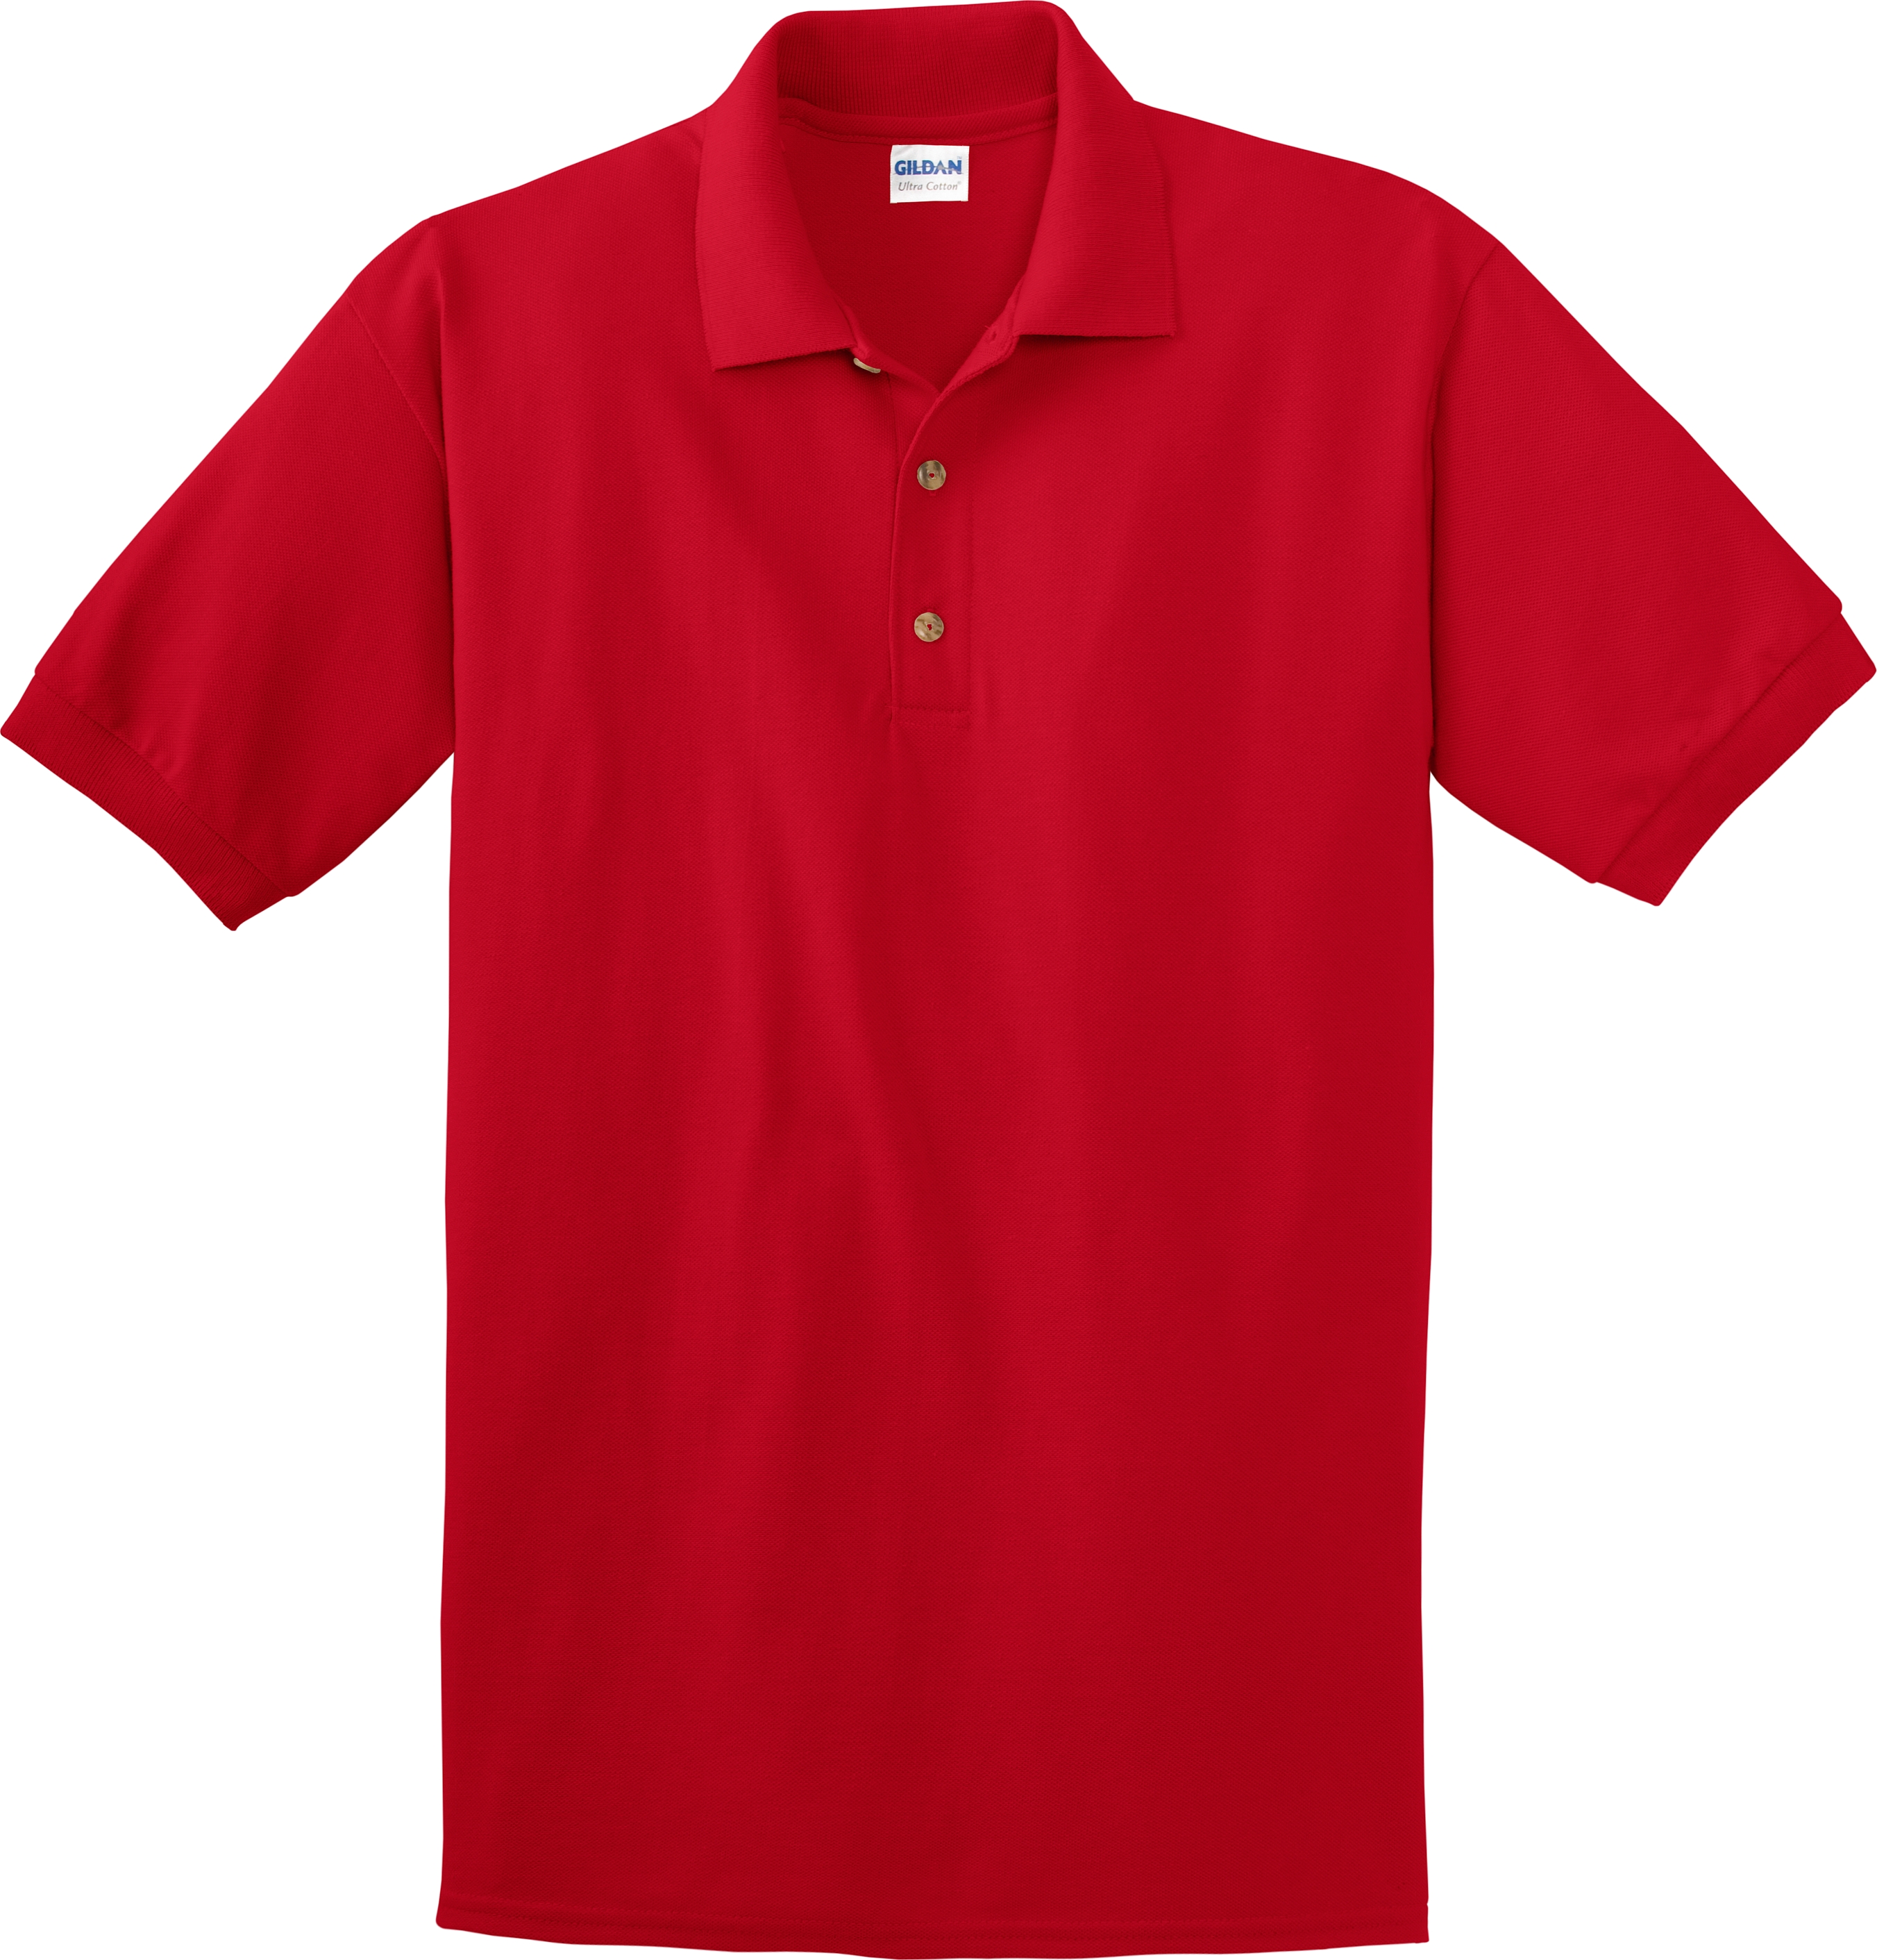 Unisex Pique Knit Solid Color Sport Shirts | KNG.com